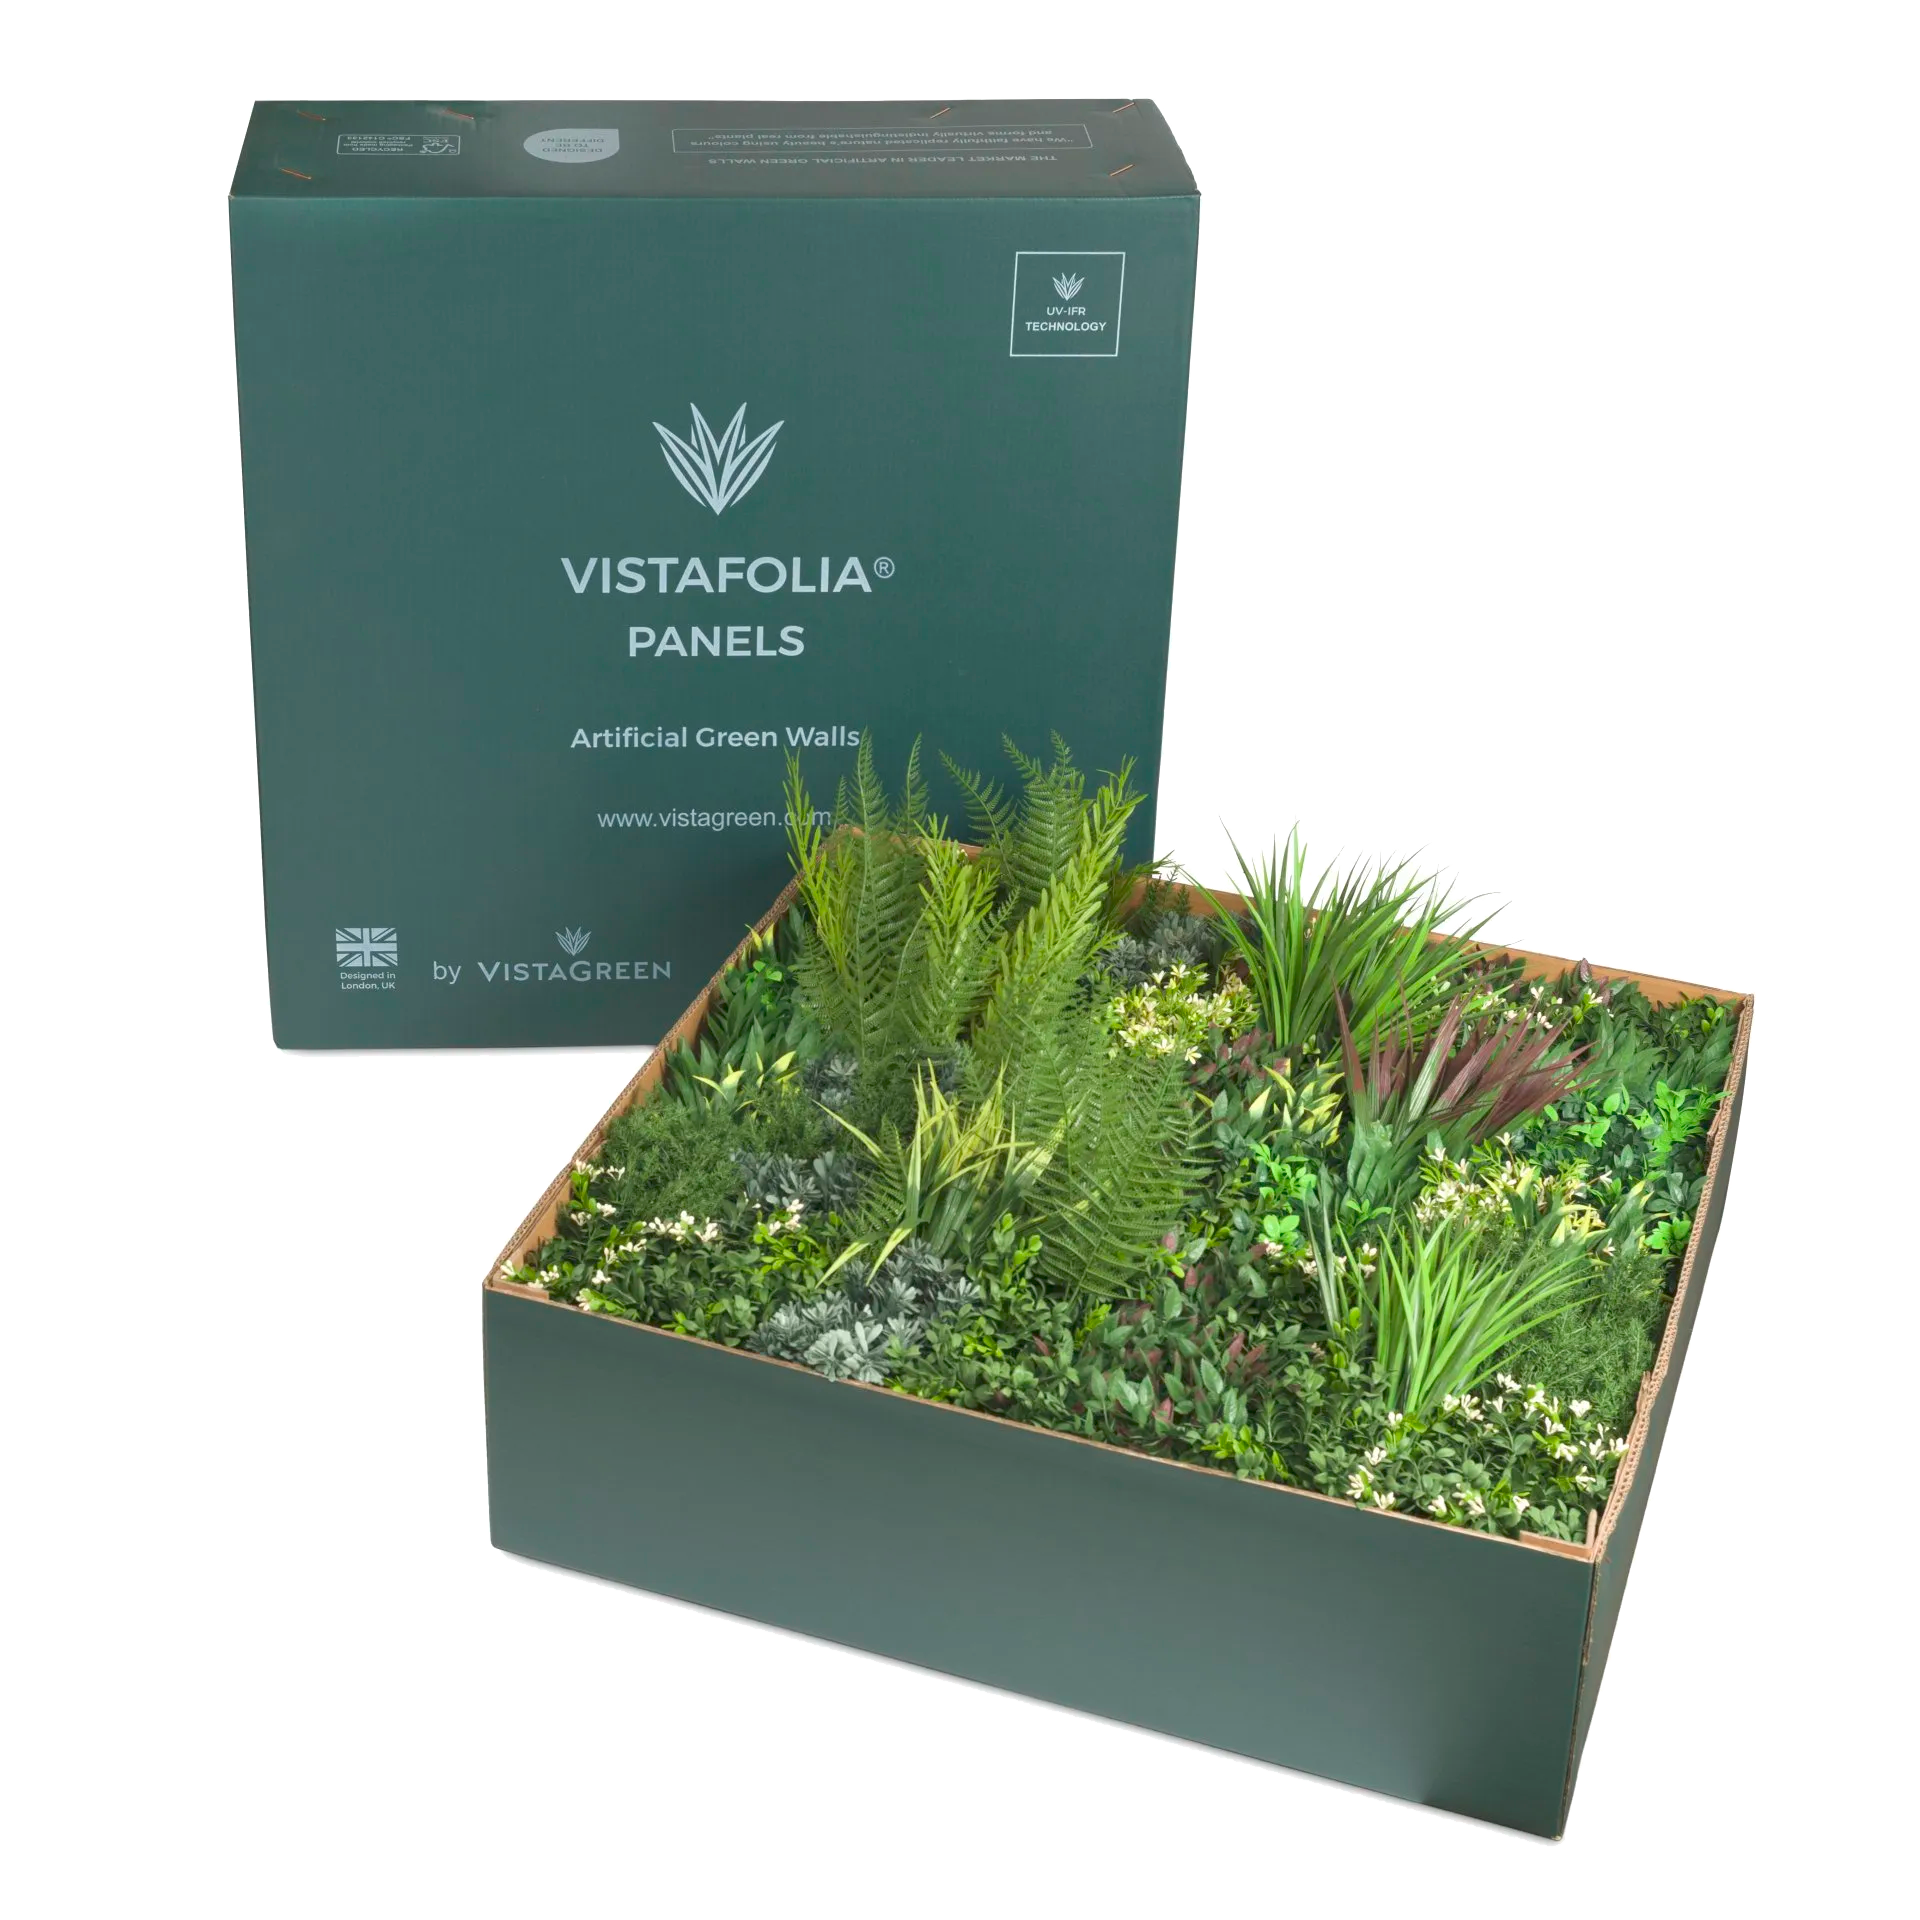 Vistafolia Artificial Green Walls - AGL Grass